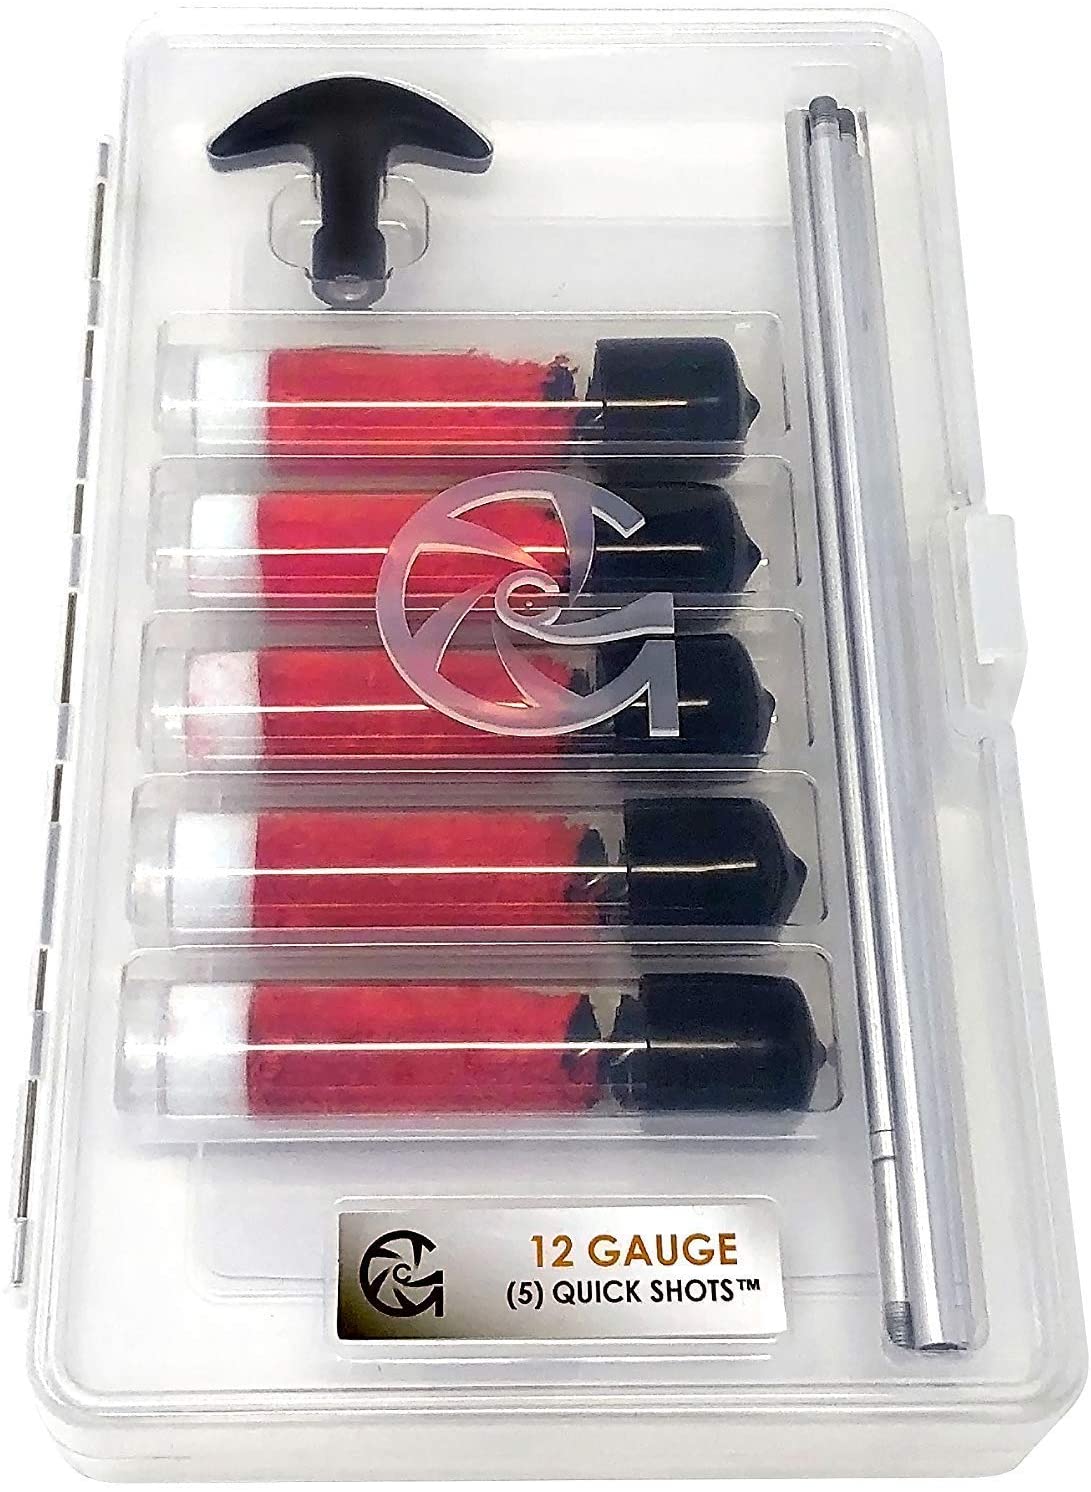 12-Gauge QuickShot Shotgun Cleaning Kit